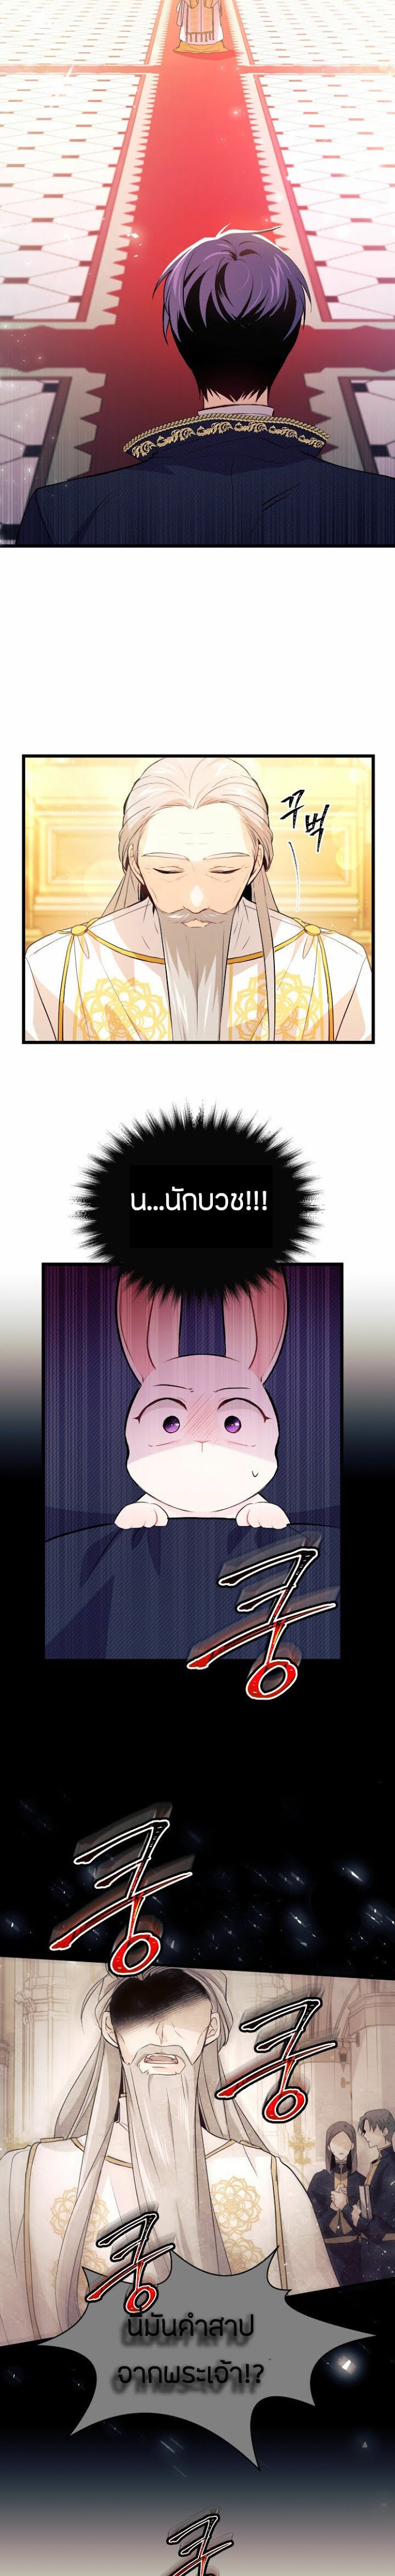 rabbit7 15